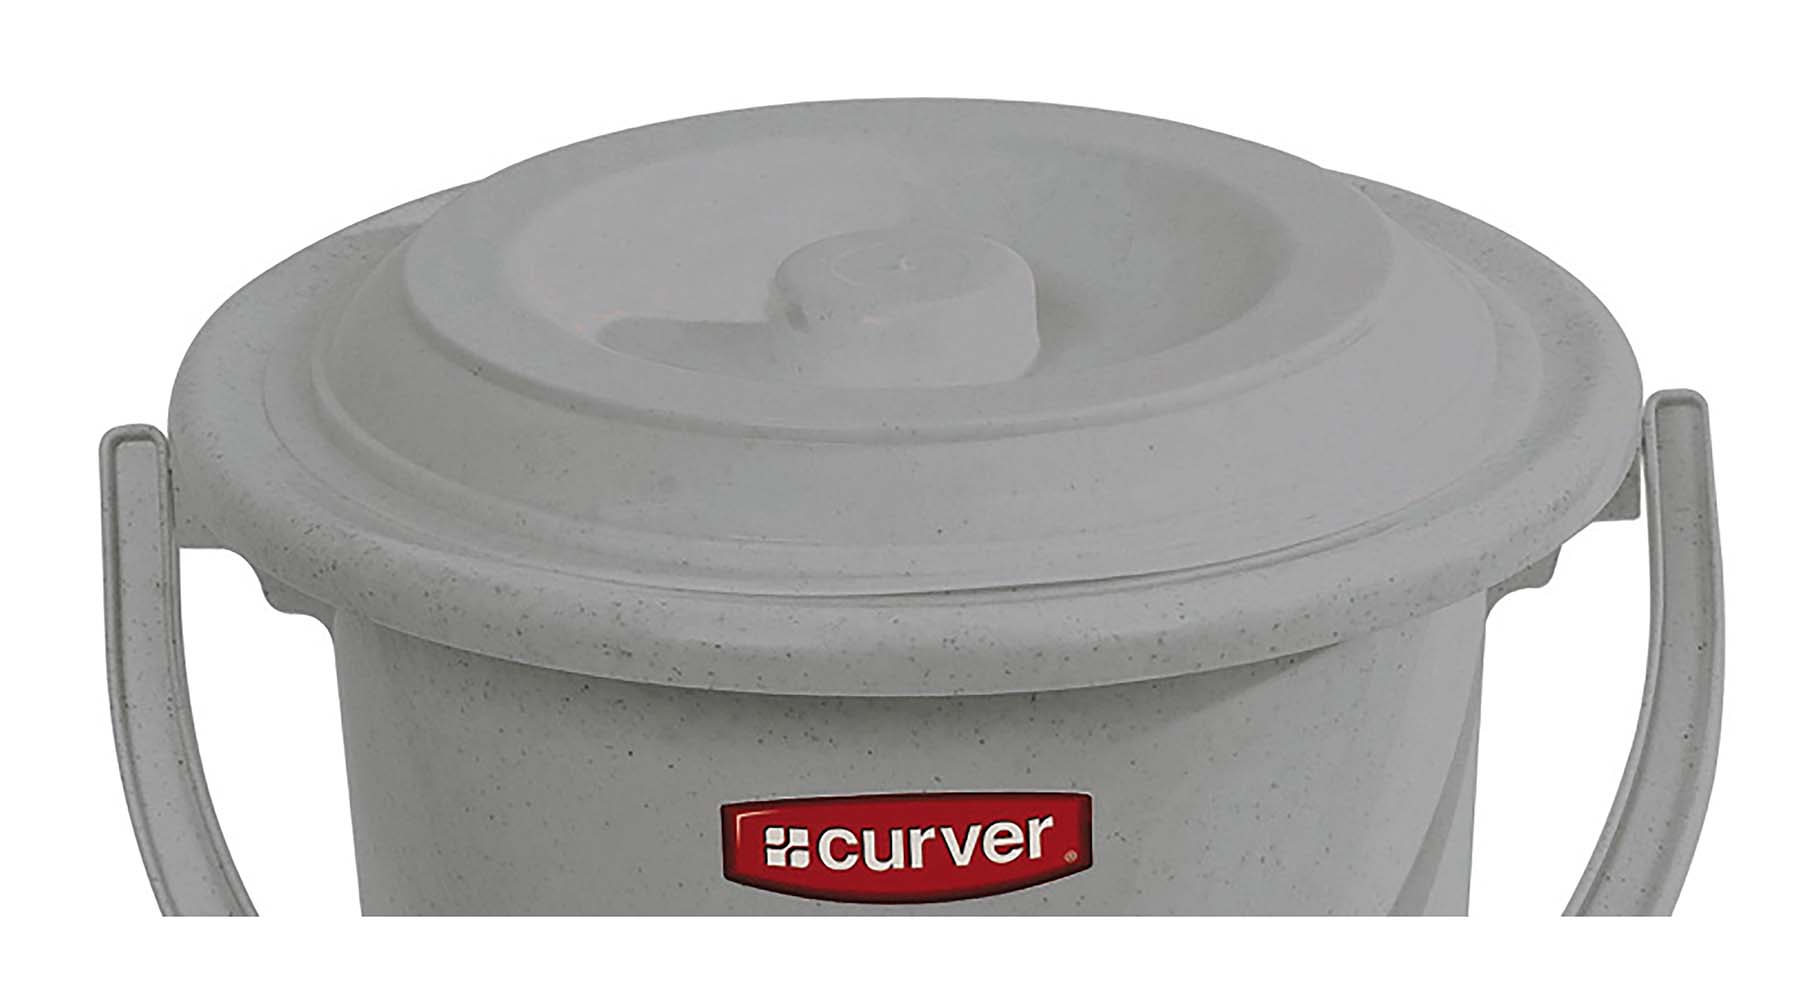 5526252 Een vervangend deksel voor de Curver toiletemmer van 10 liter. Ideaal ter vervanging van een kapot en/of versleten deksel.